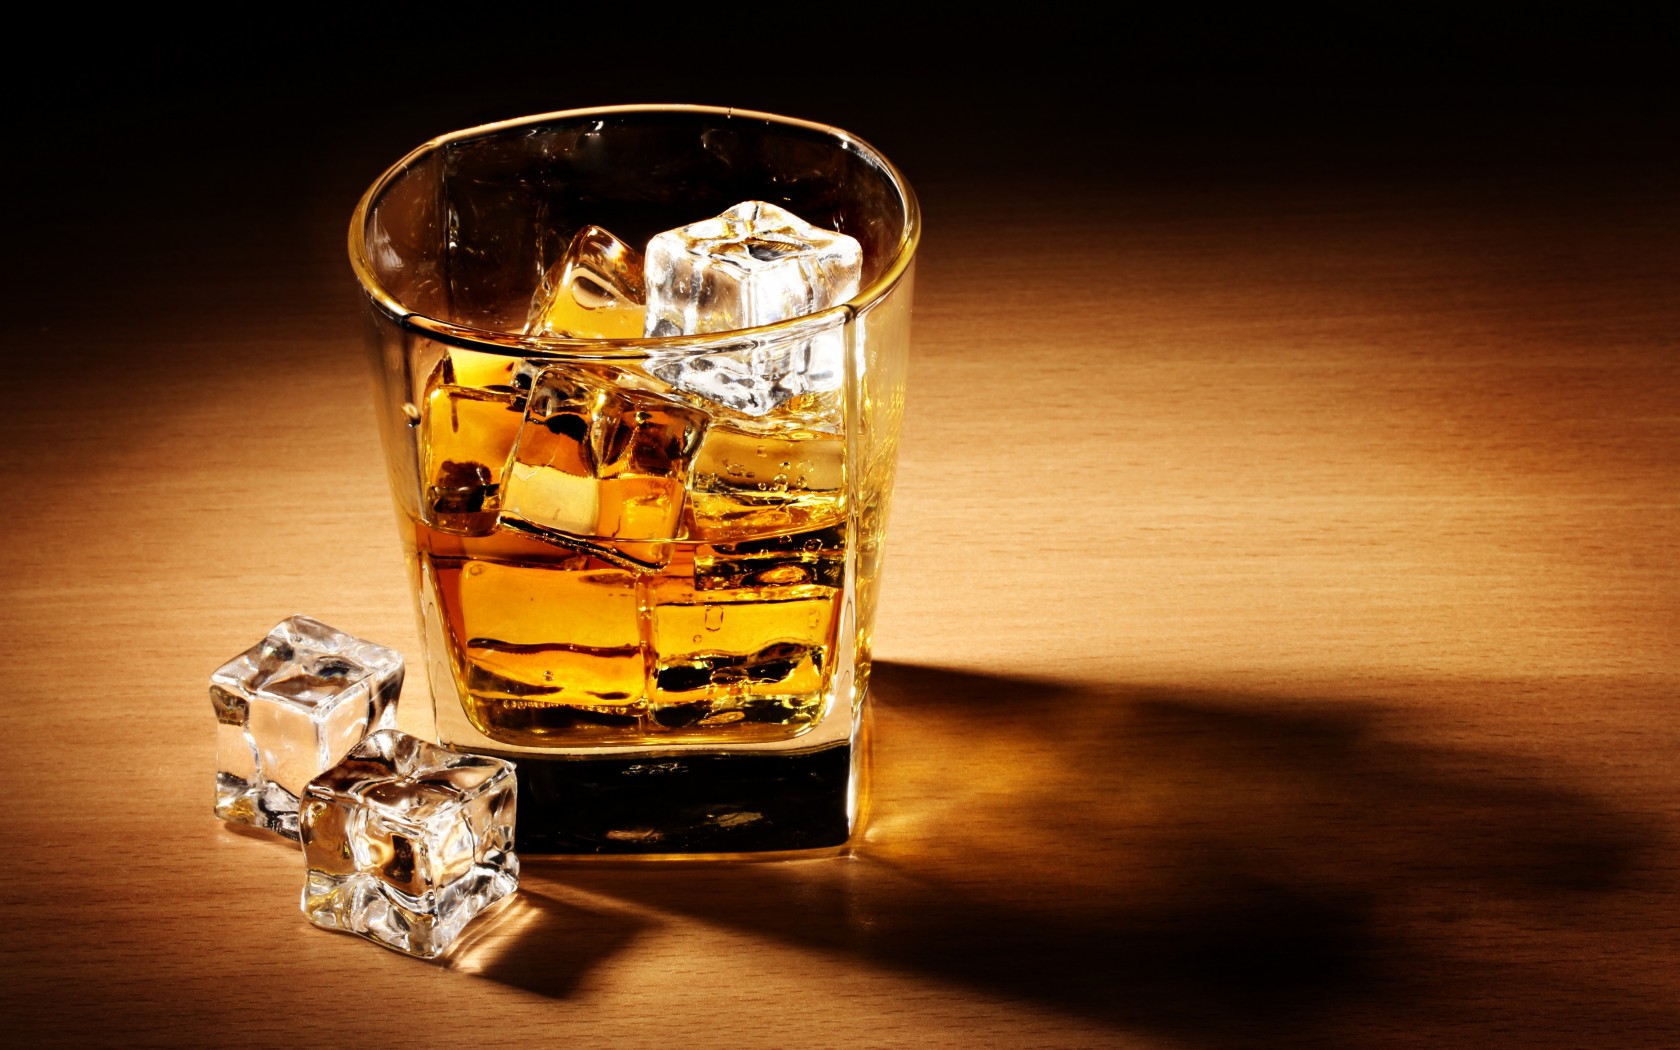 Злоупотребление алкоголем - одна из причин образования тромбов